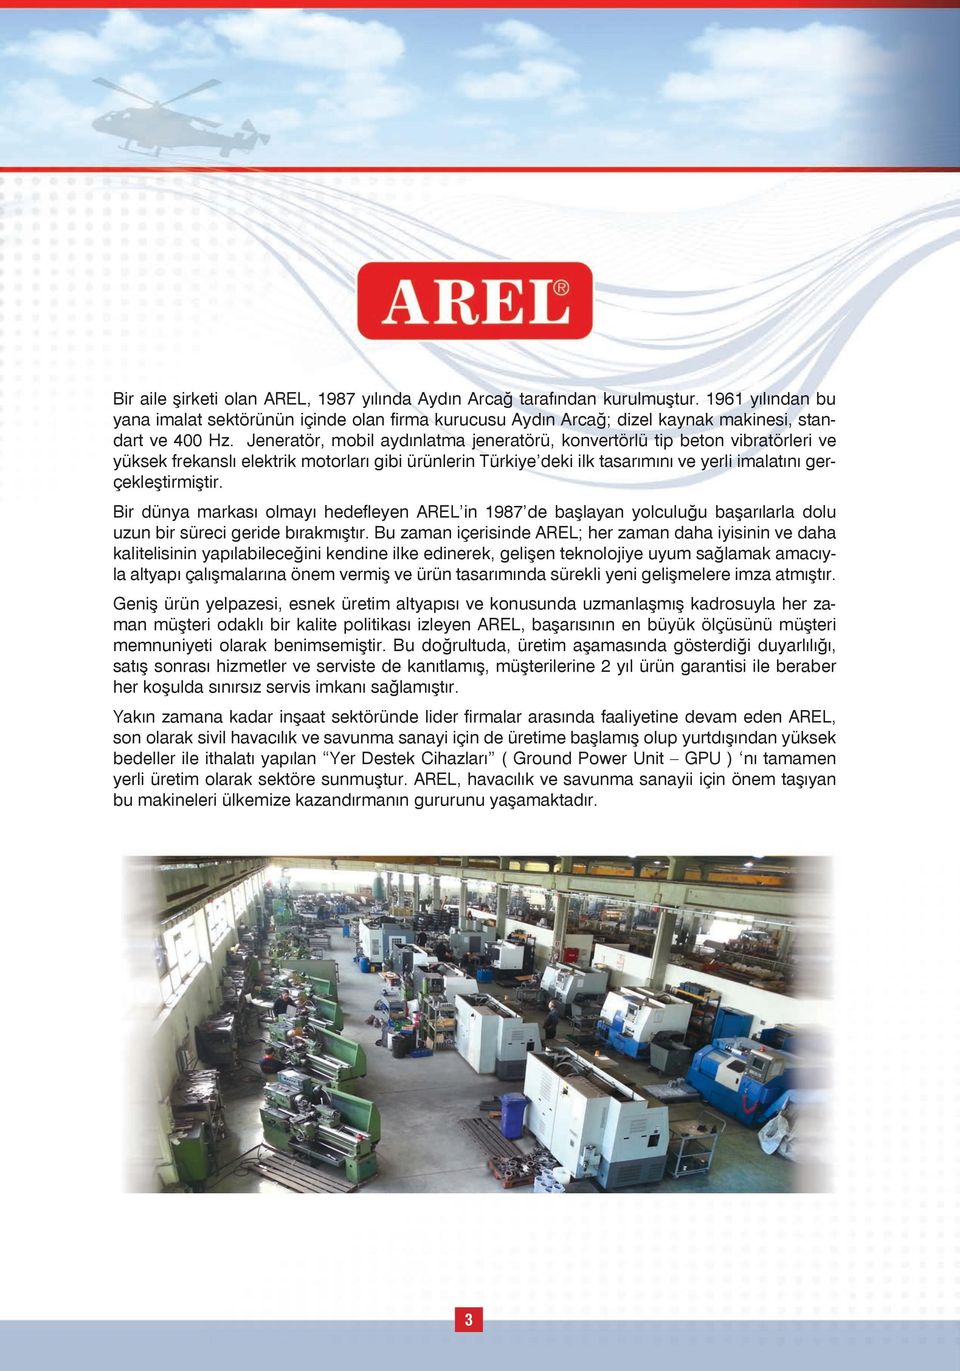 Bir dünya markası olmayı hedefleyen AREL in 1987 de başlayan yolculuğu başarılarla dolu uzun bir süreci geride bırakmıştır.